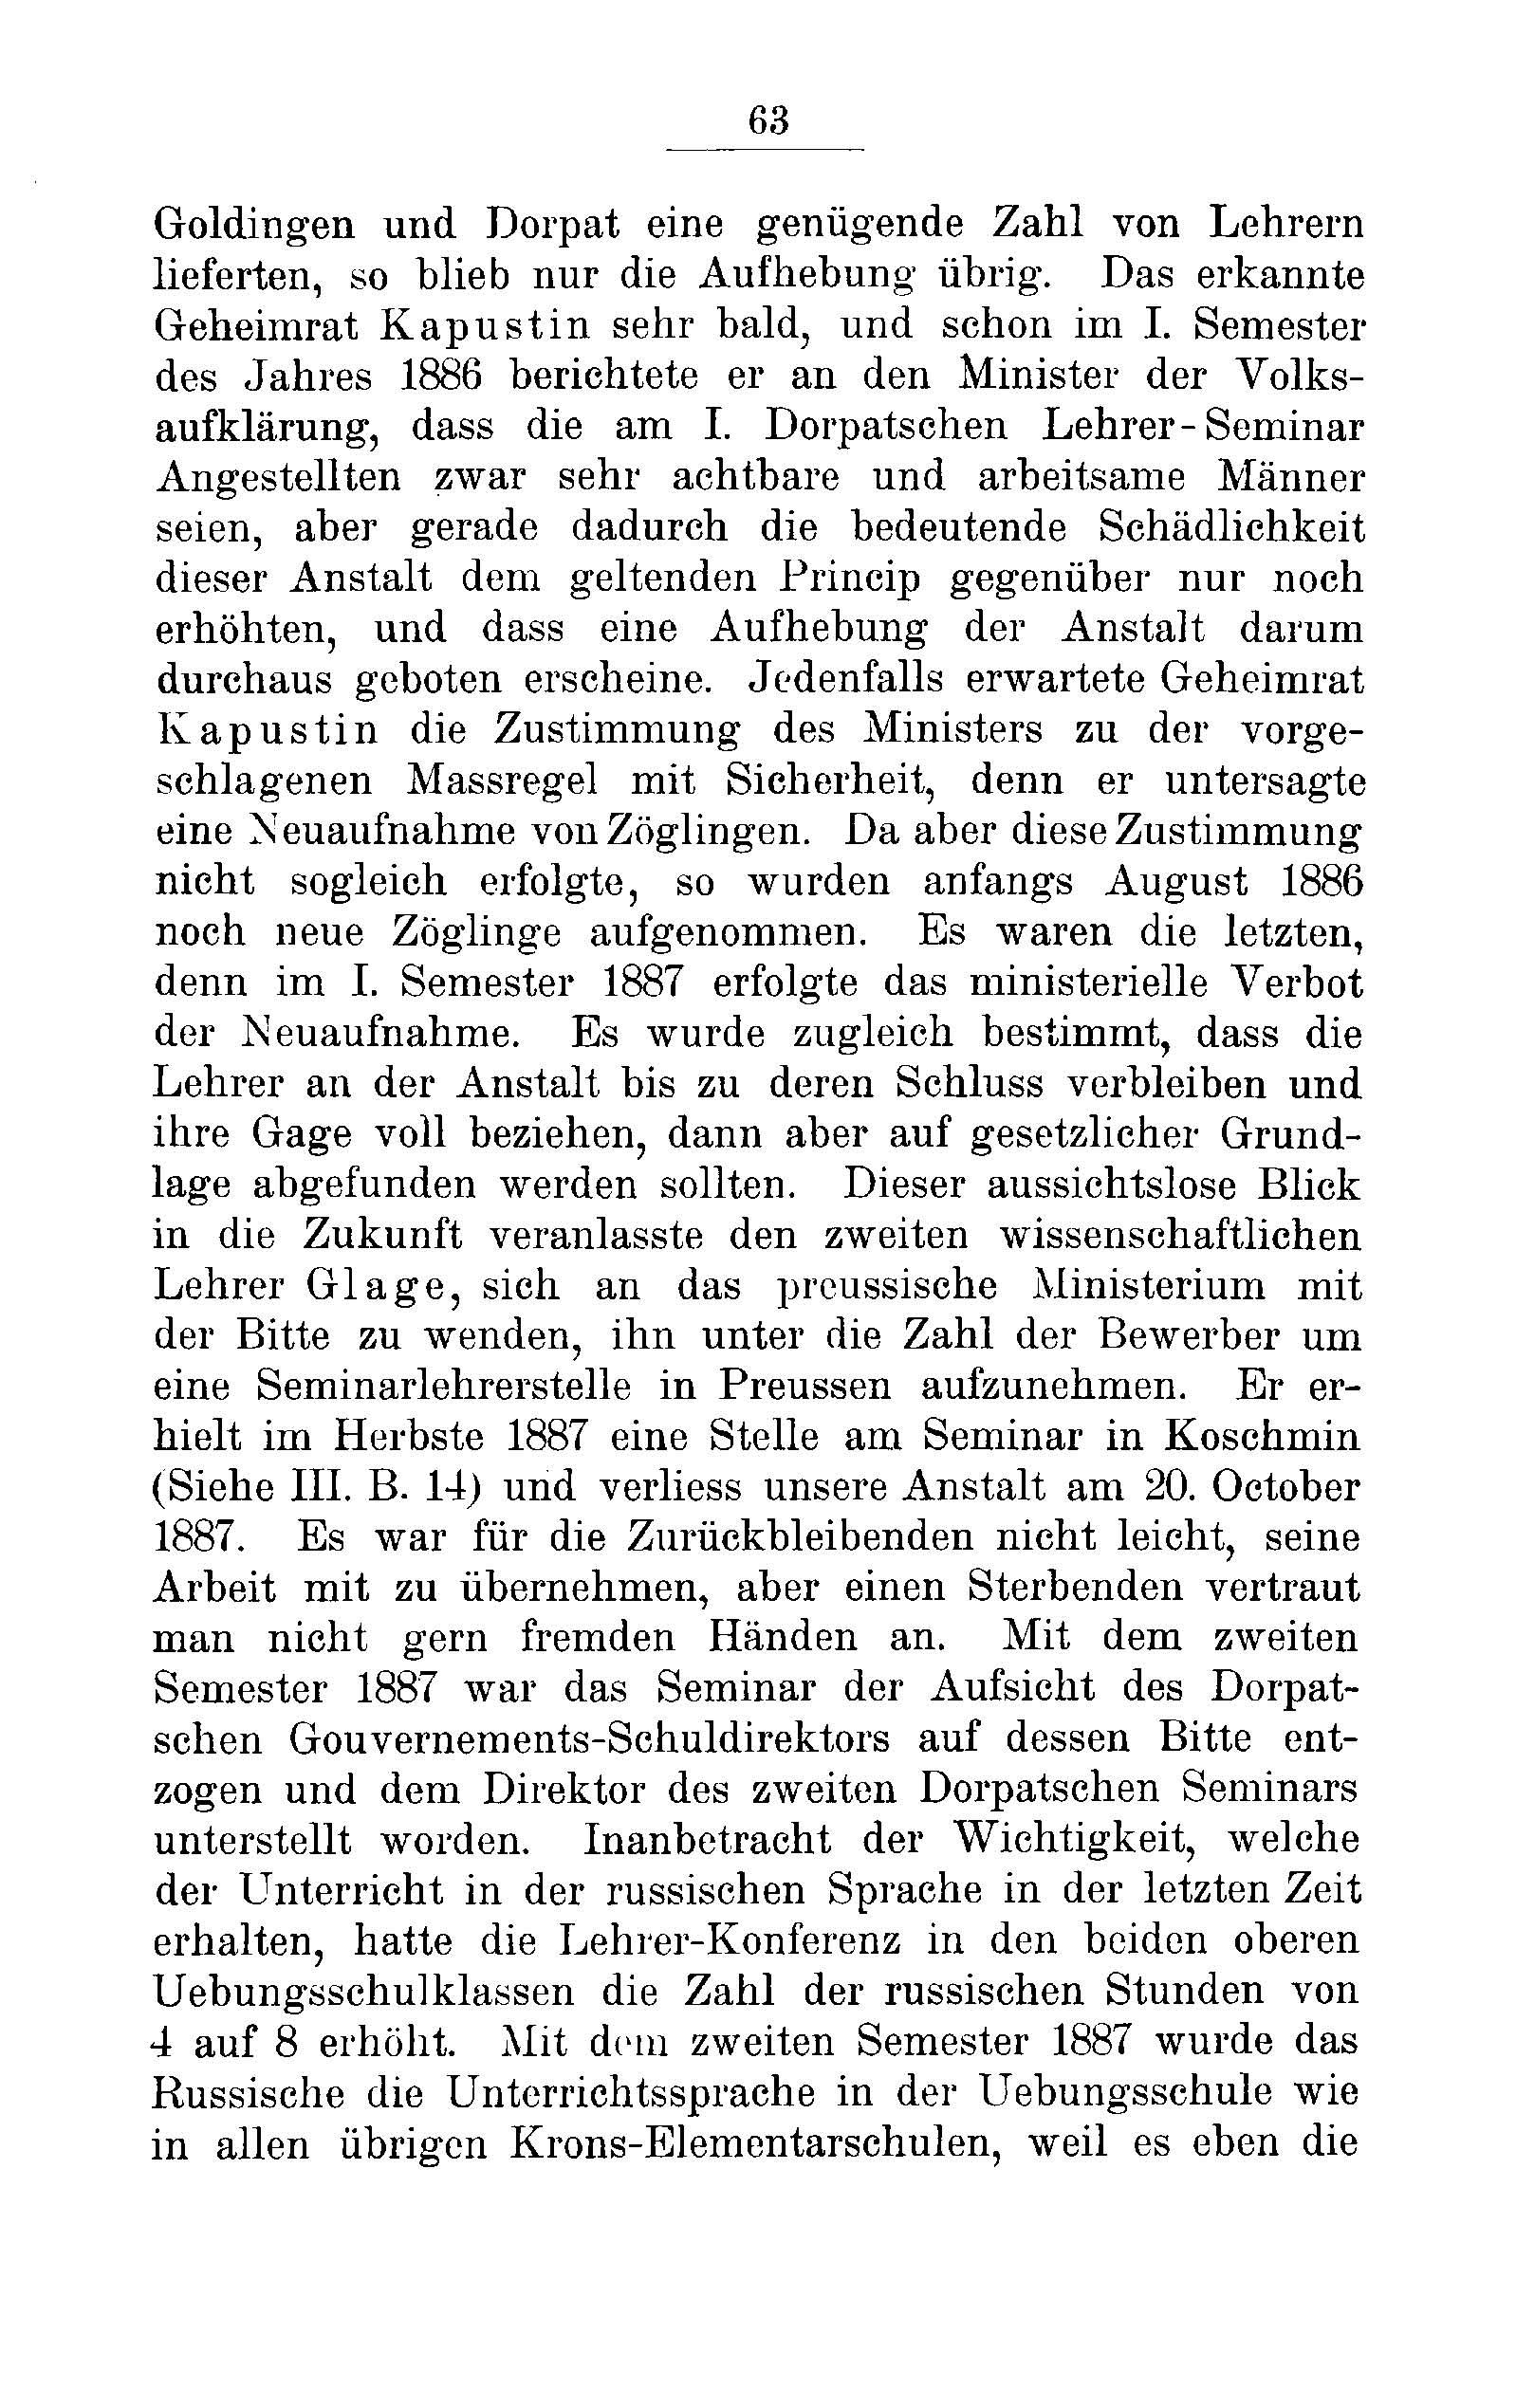 Das Erste Dorpatsche Lehrer-Seminar (1890) | 66. Haupttext